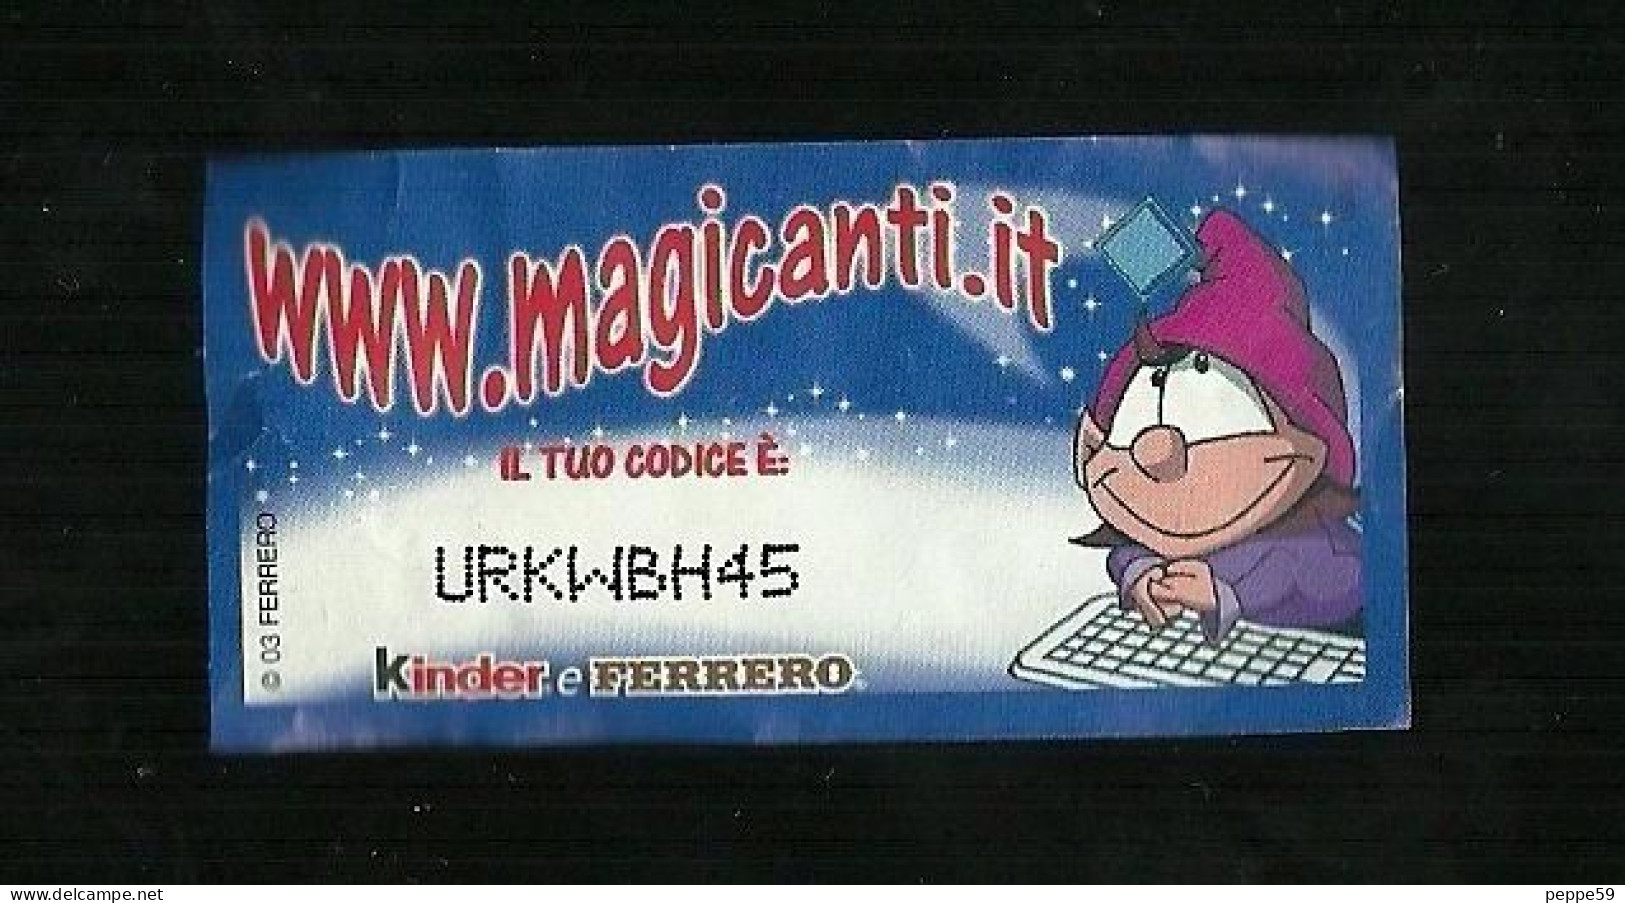 Kinder Ferrero - Magicode 3 - I Magicanti - Notes